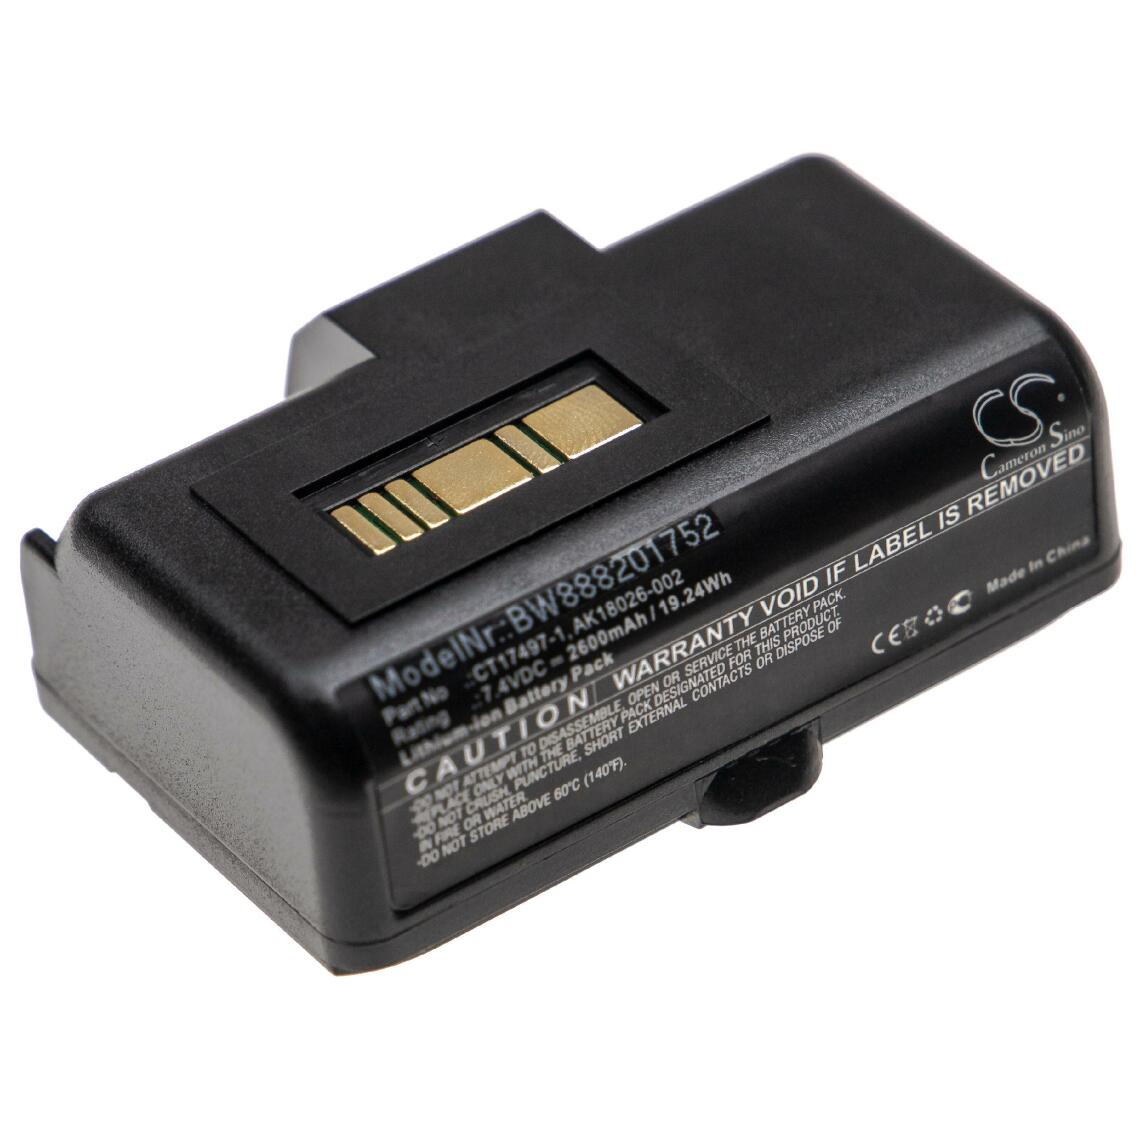 Vhbw - vhbw batterie remplace Zebra AK18026-002, CT17497-1 pour imprimante photocopieur scanner imprimante à étiquette (2600mAh, 7,4V, Li-Ion) - Imprimante Jet d'encre